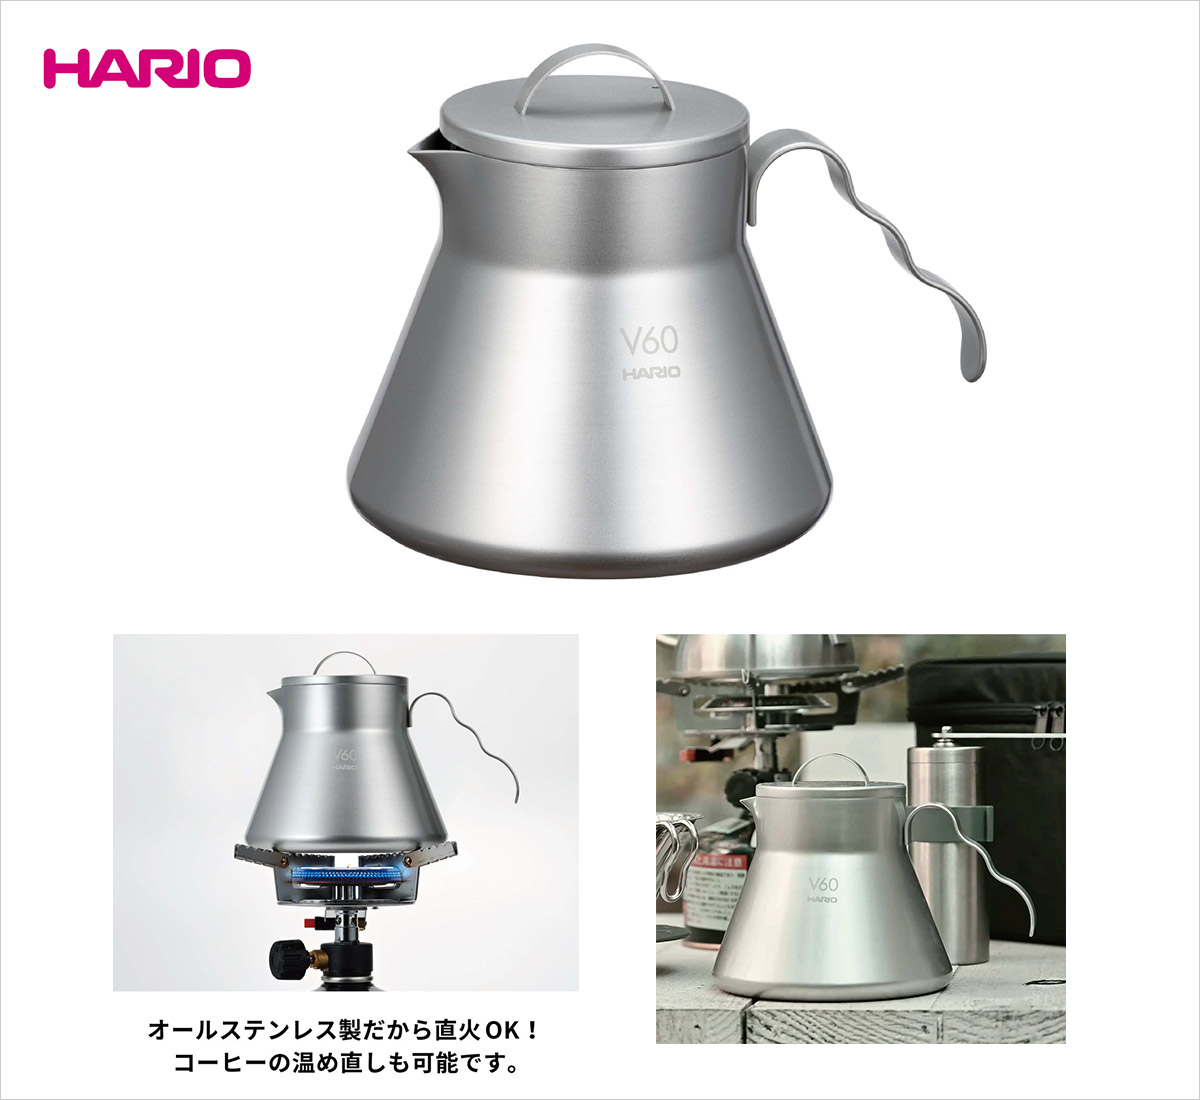 2022年新作 『HARIO』V60 メタルコーヒーサーバー